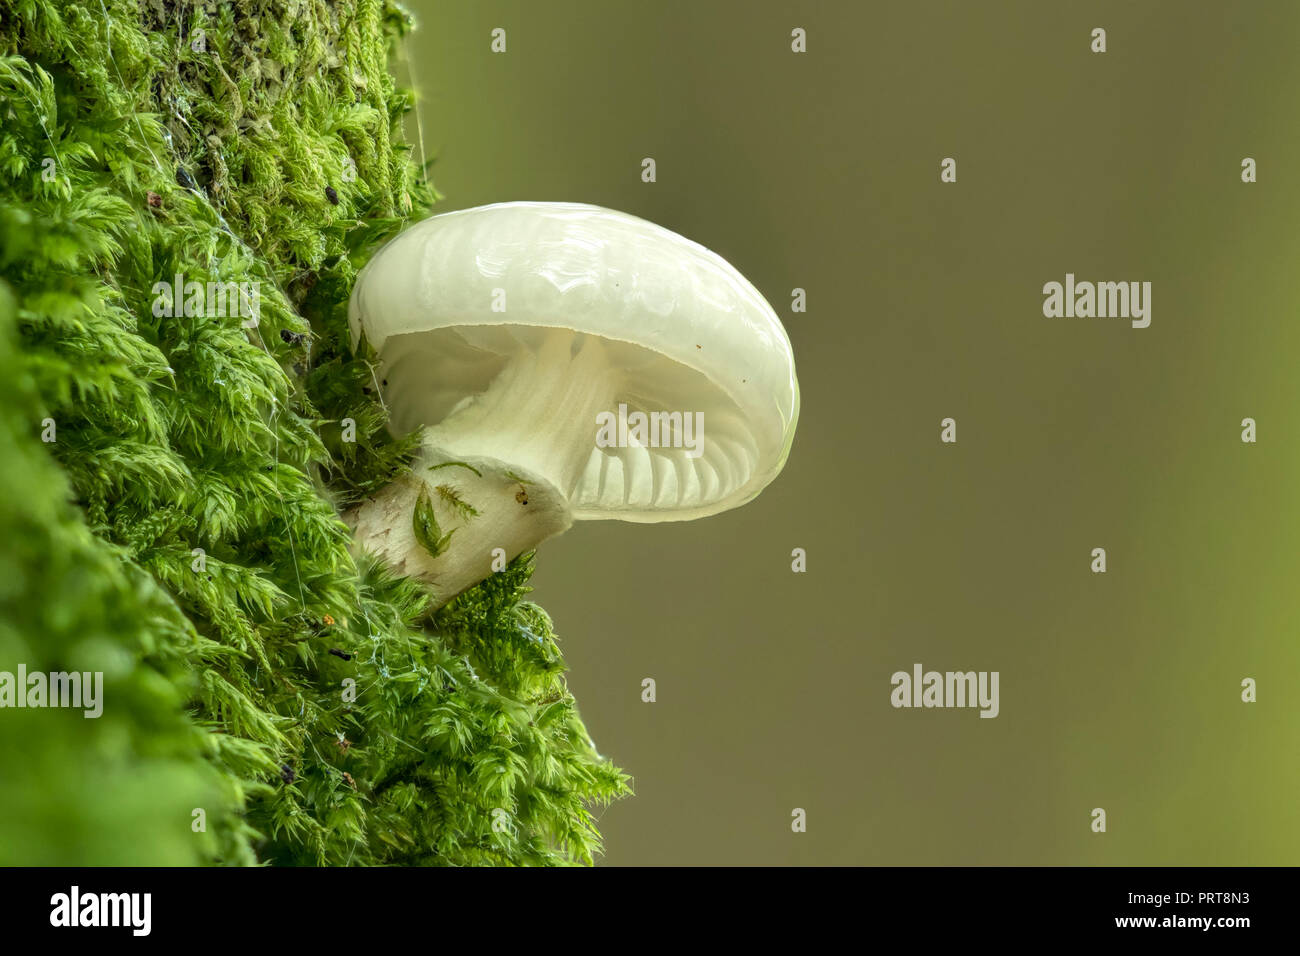 Porzellan Pilz (Oudemansiella mucida) Wachsende am Stamm der Buche. Tipperary, Irland Stockfoto